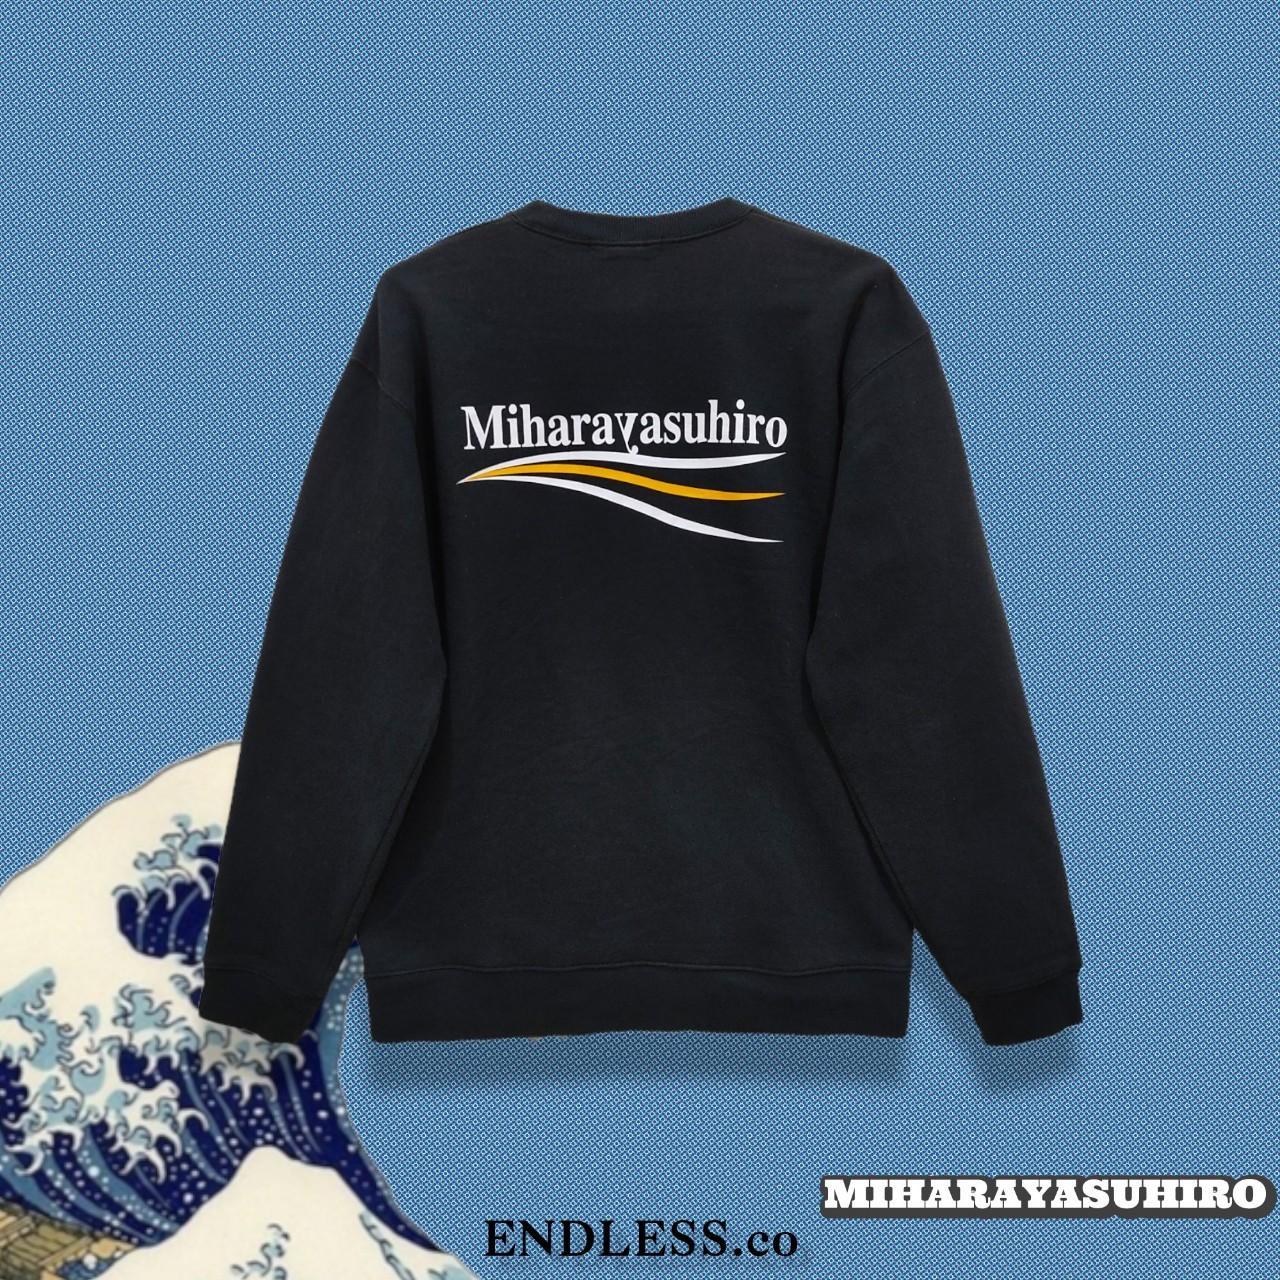 Maison Mihara Yasuhiro Men's Black Sweatshirt